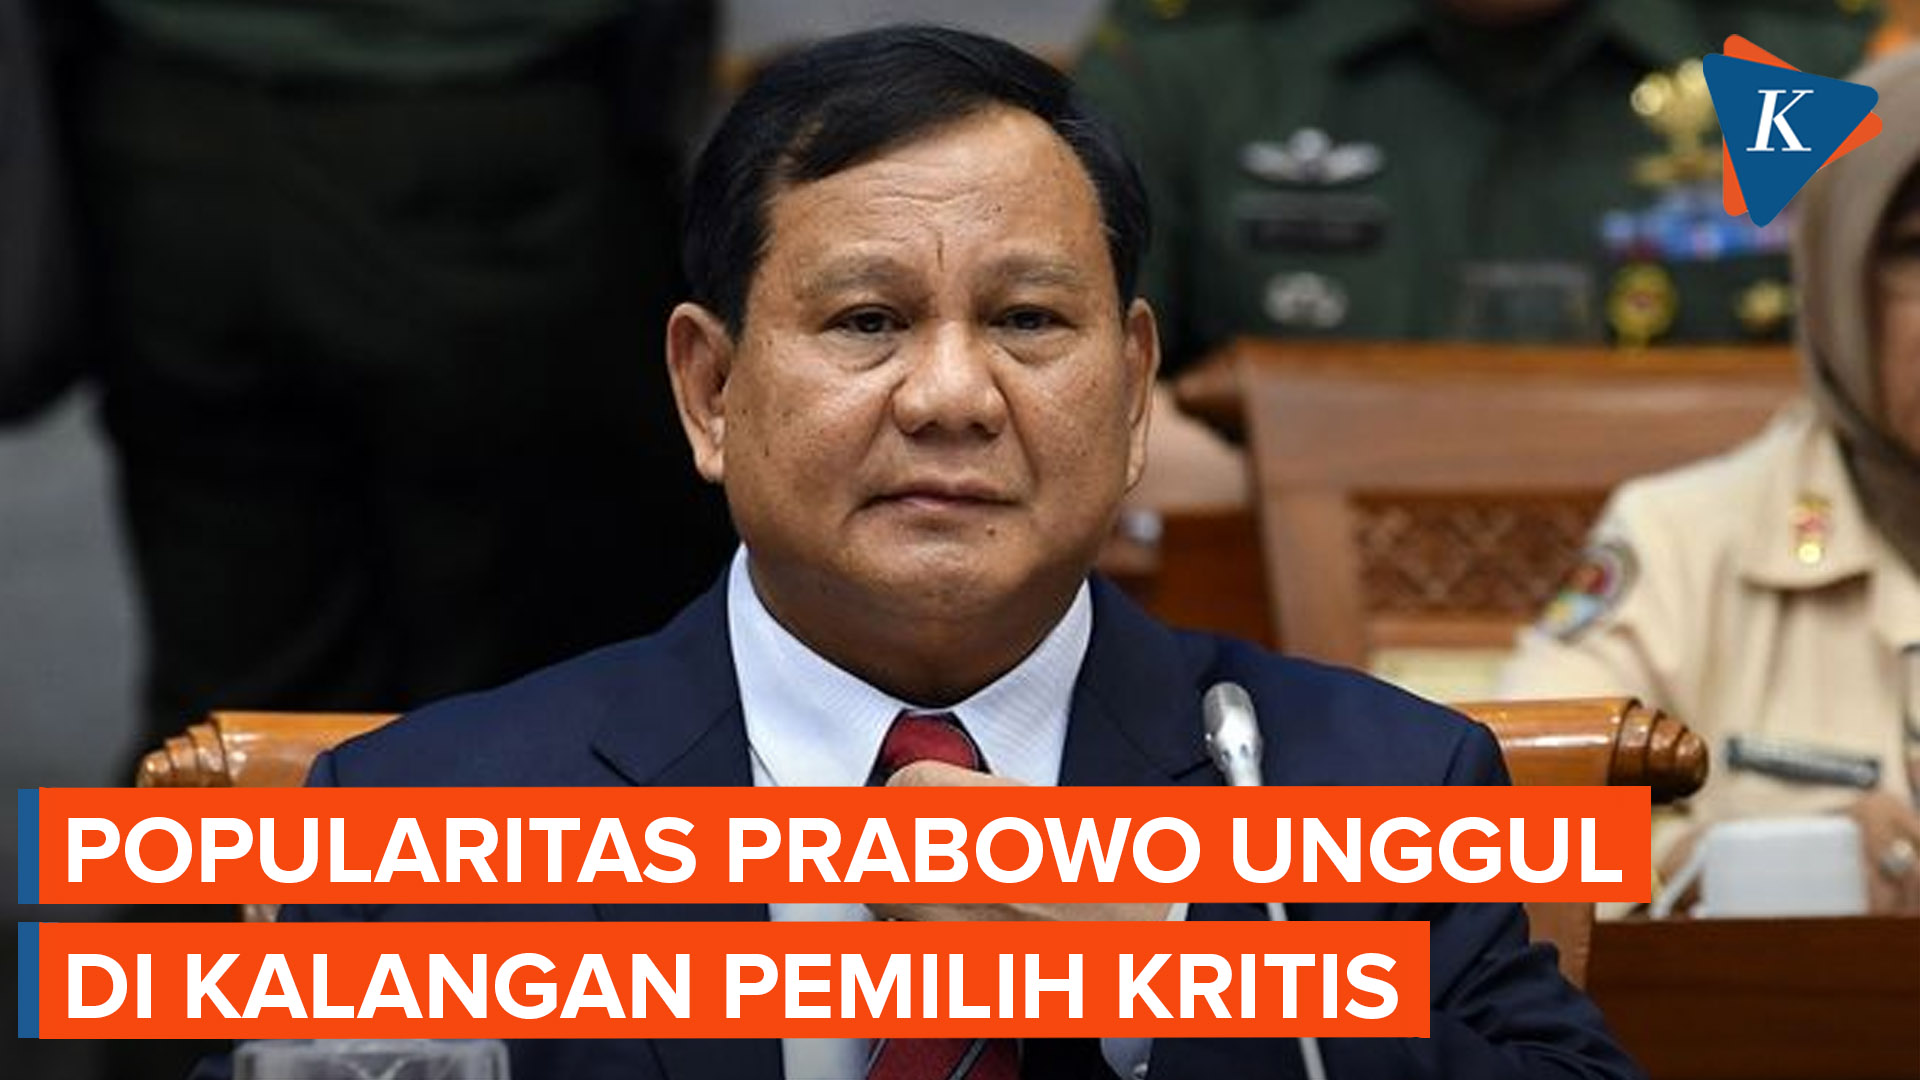 Popularitas Prabowo Unggul di Kalangan Pemilih Kritis